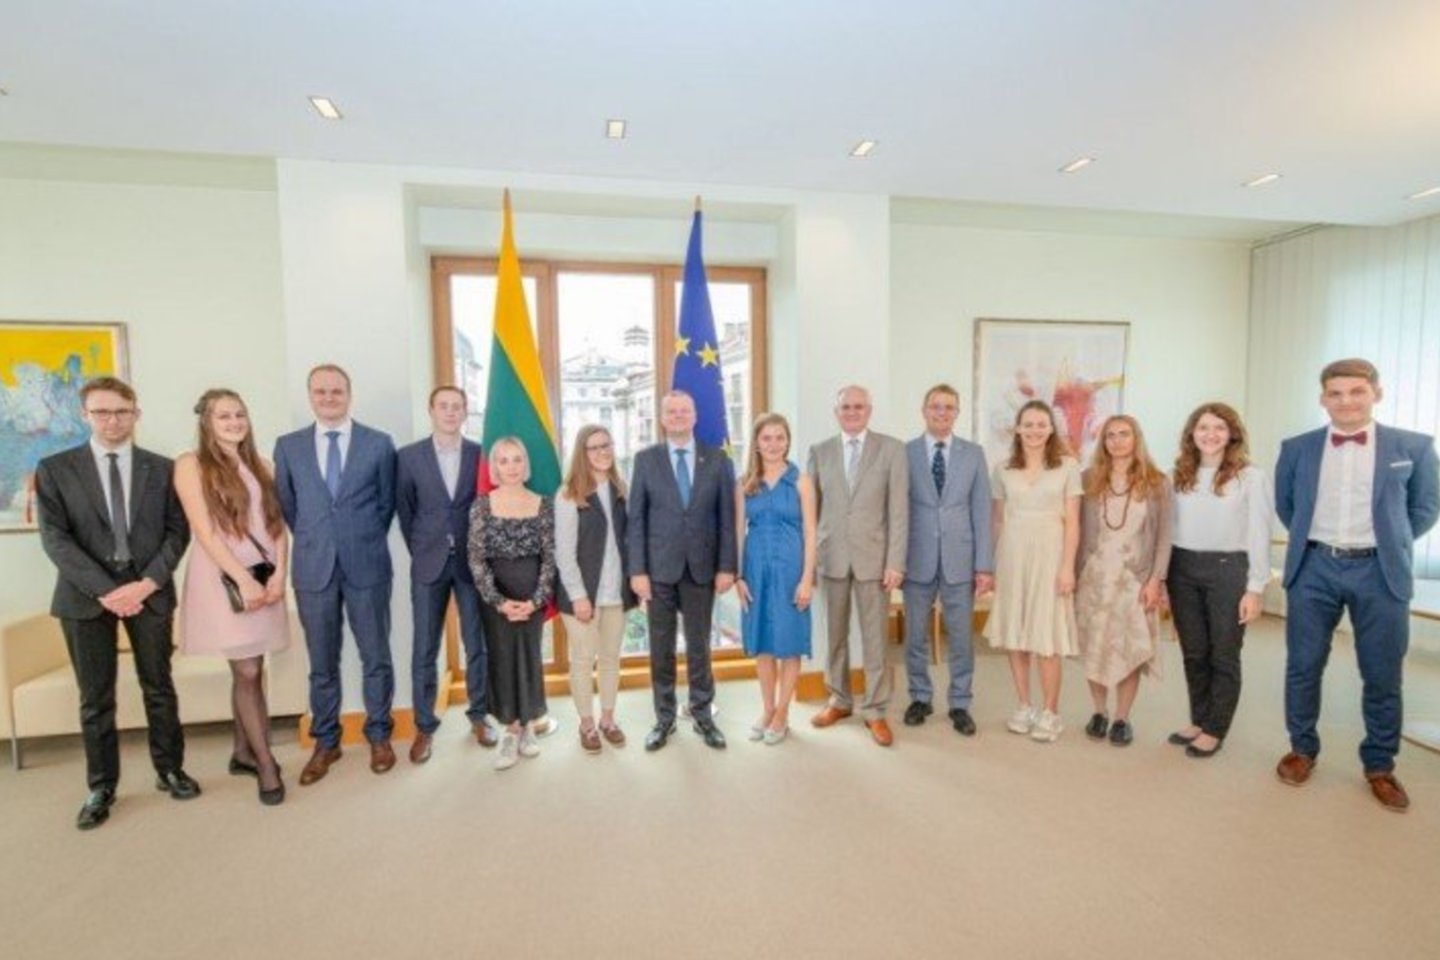  Gabiausiam jaunimui užsienio universitetai – stotelė prieš grįžtant namo.<br> Lietuvos Respublikos Vyriausybės kanceliarijos nuotr.